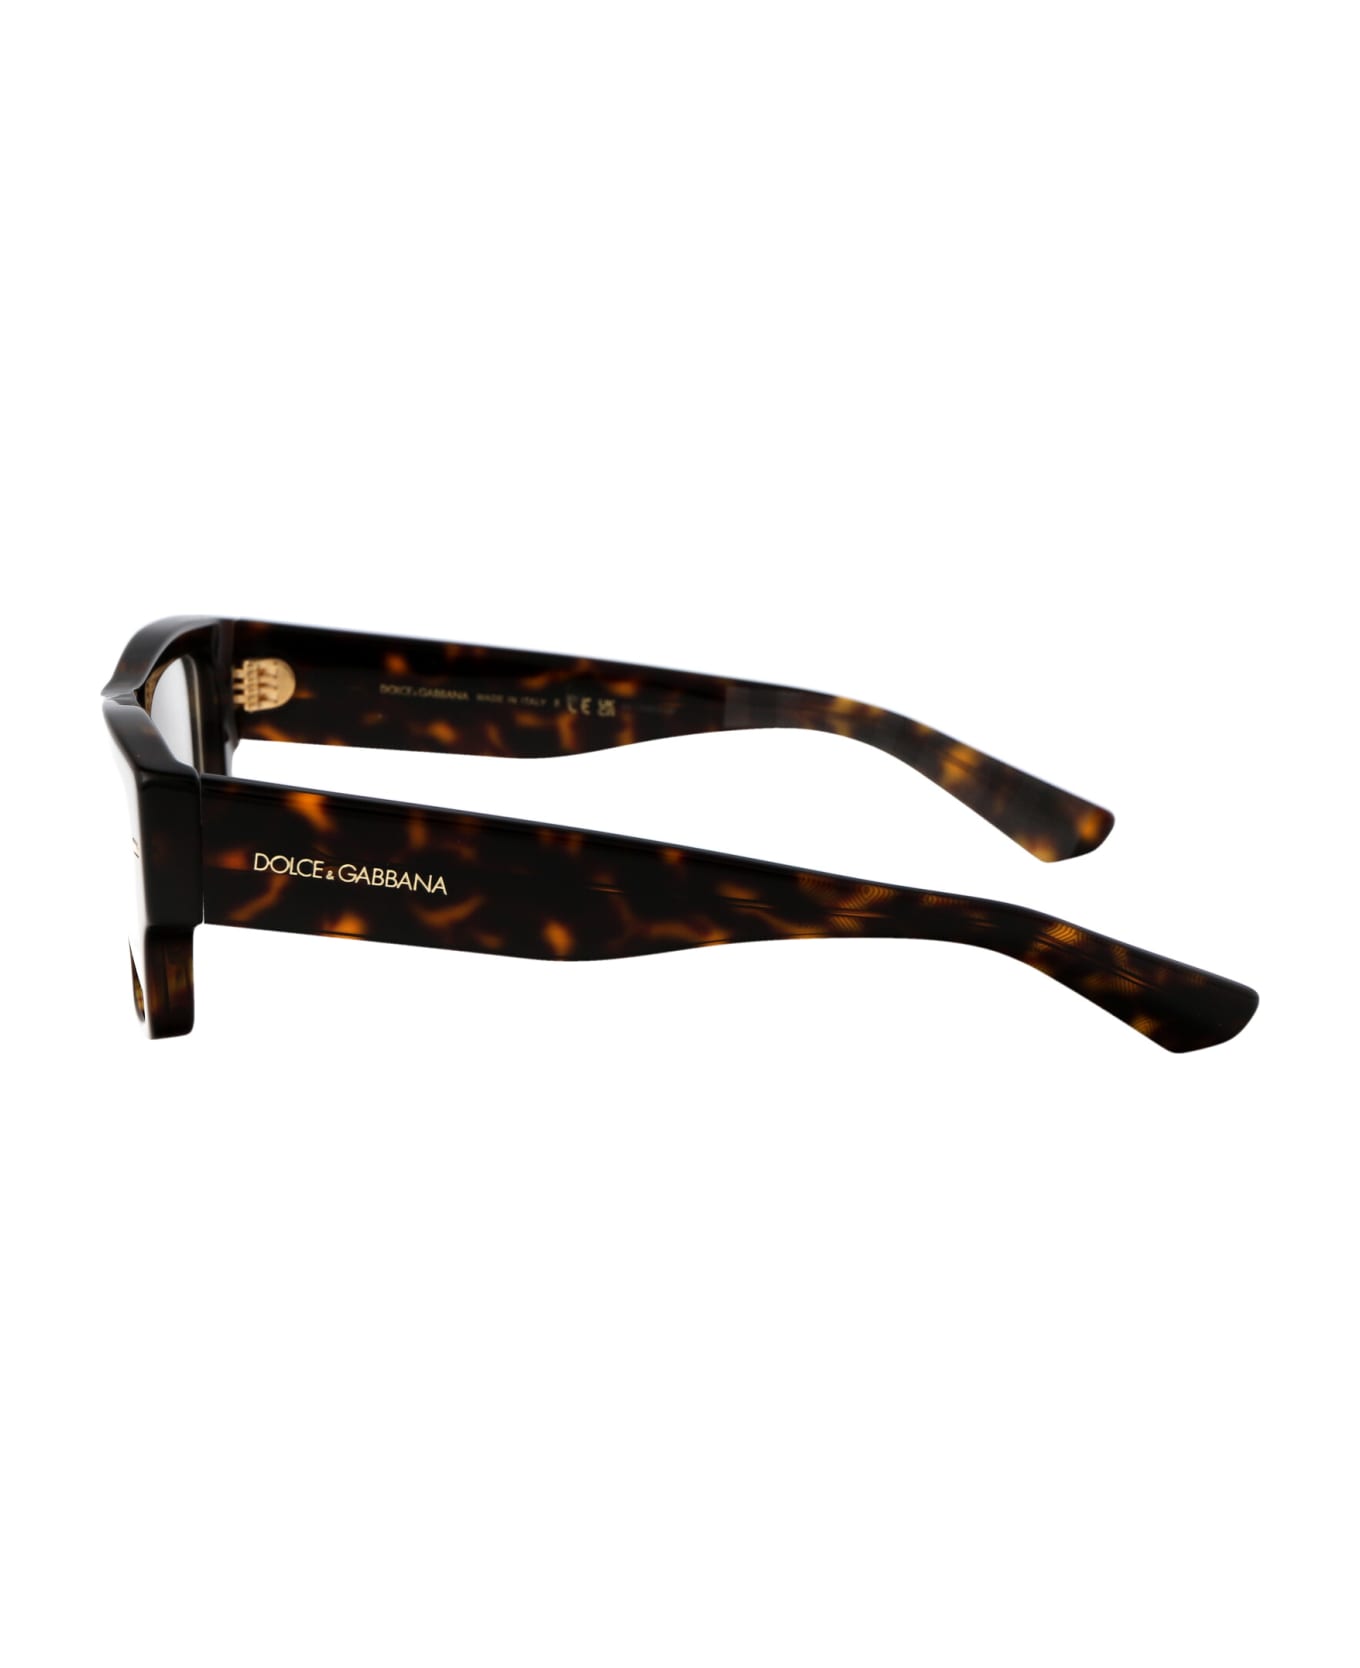 Dolce & Gabbana Eyewear 0dg3379 Glasses - 502 HAVANA